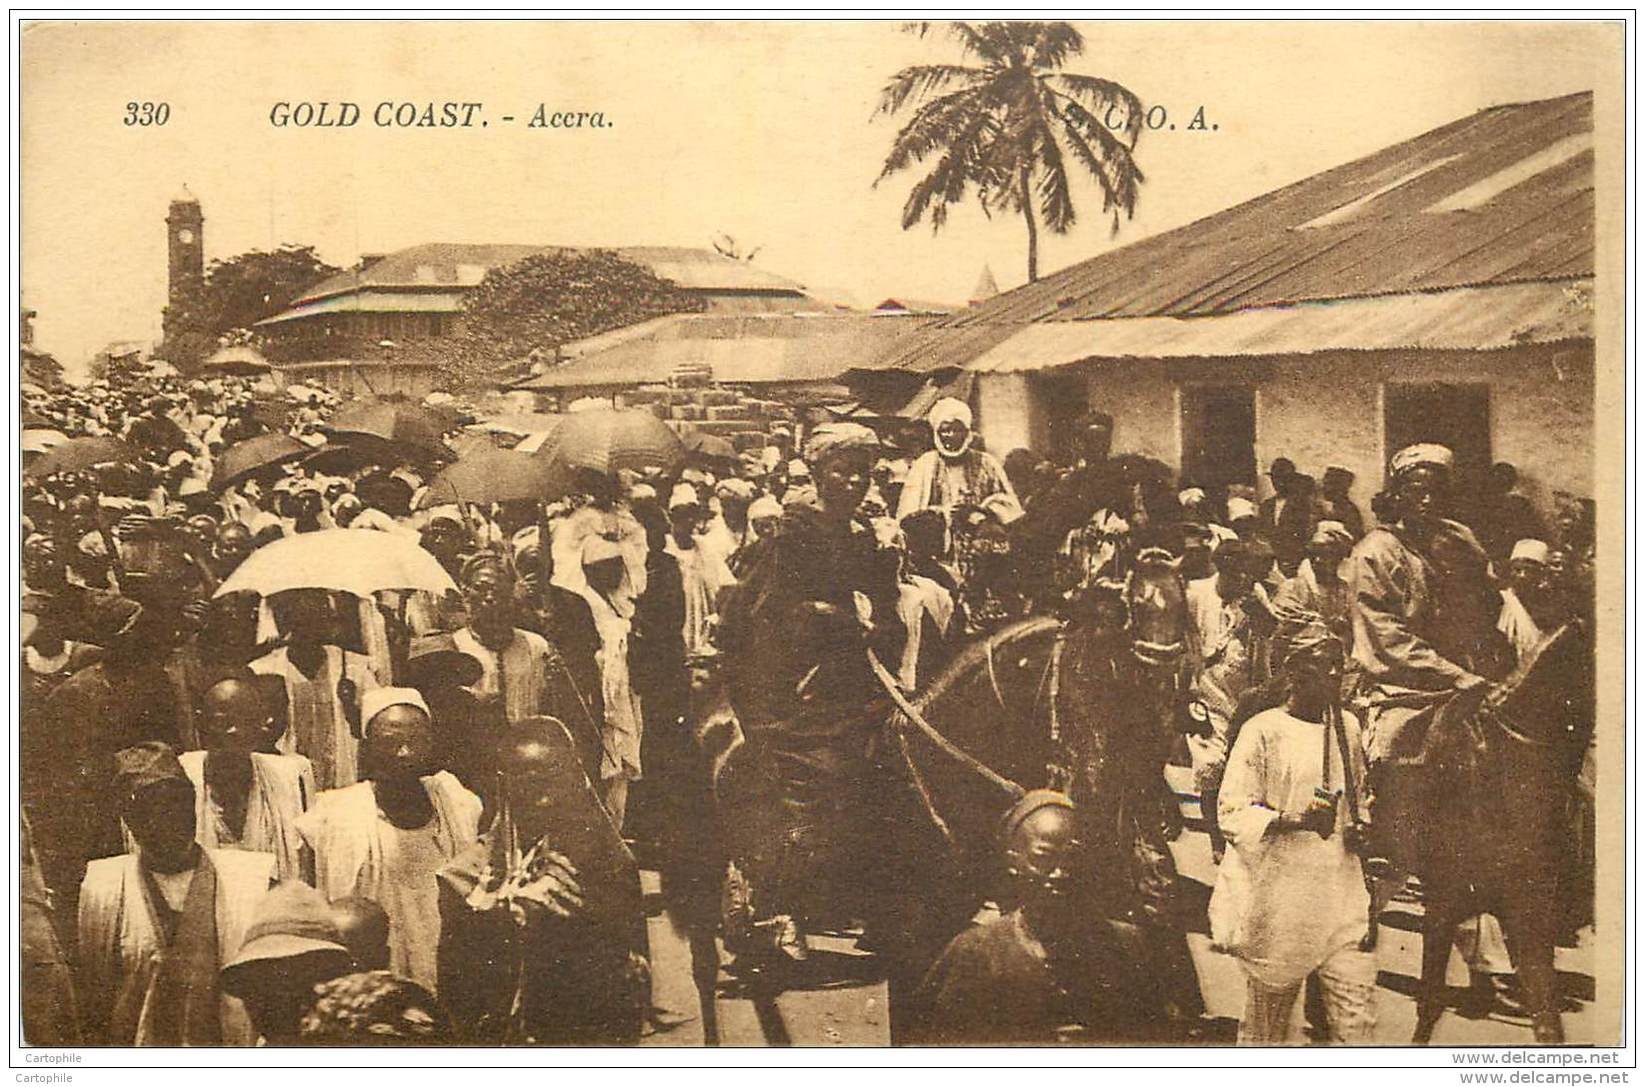 Ghana - Gold Coast - Acera S.C.O.A. Levy 330 - Ghana - Gold Coast